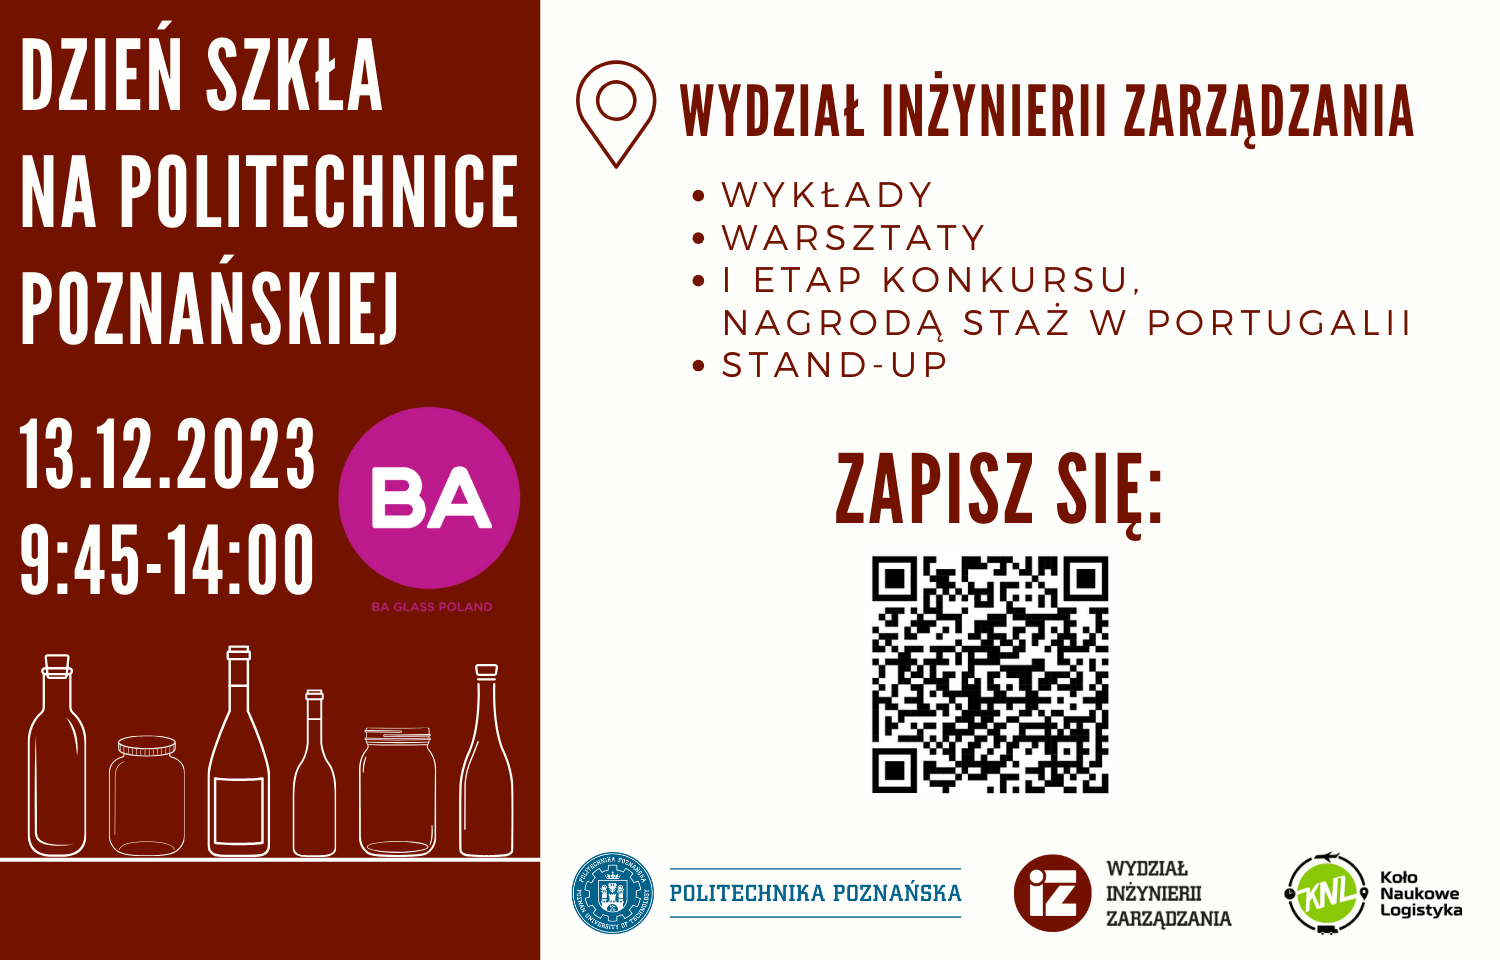 Plakat promujący dzień szkła na politechnice poznańskiej